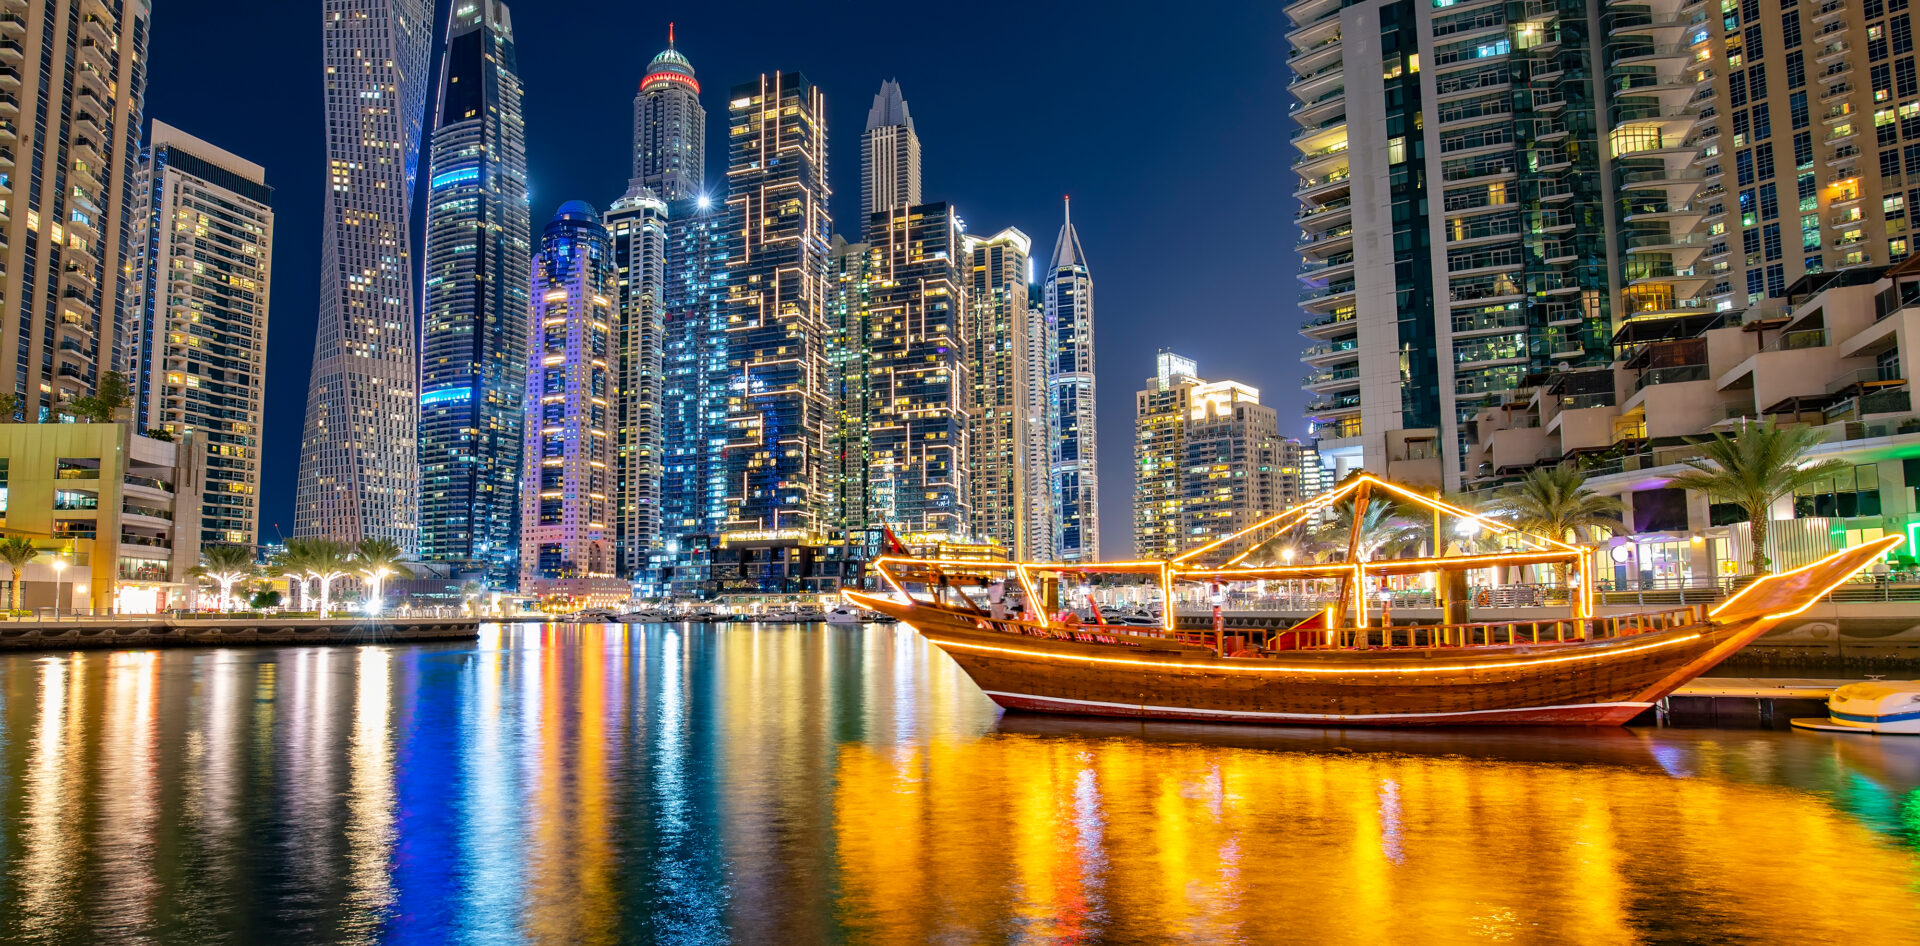 Dubai boat tours and cruises - Dhow cruise Dubai Marina